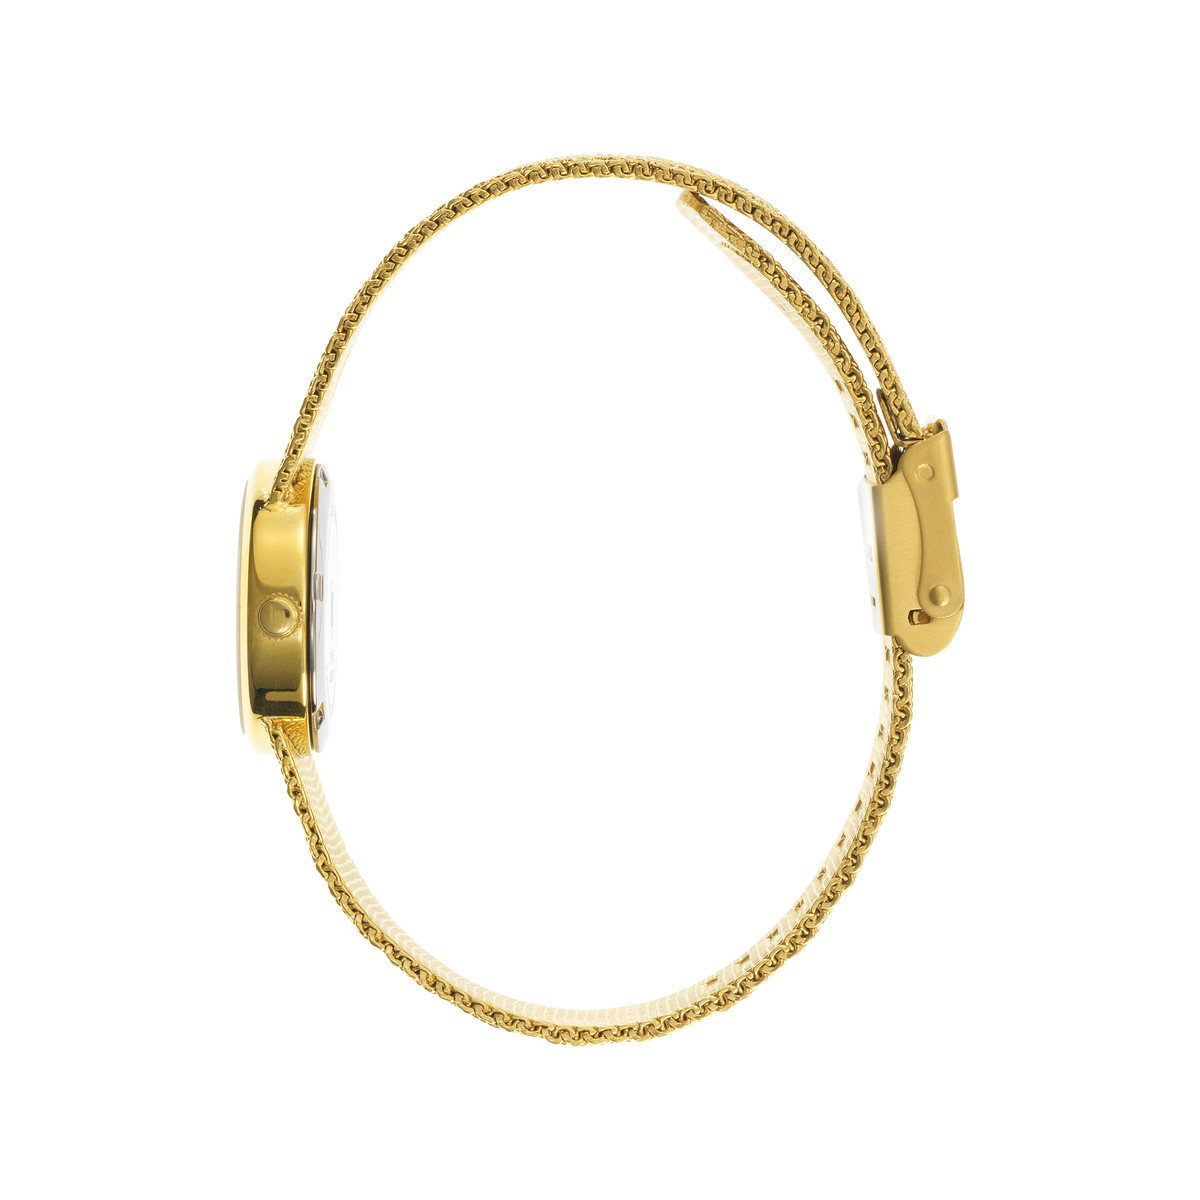 Montre LIP Henriette femme bracelet métal doré - vue 2